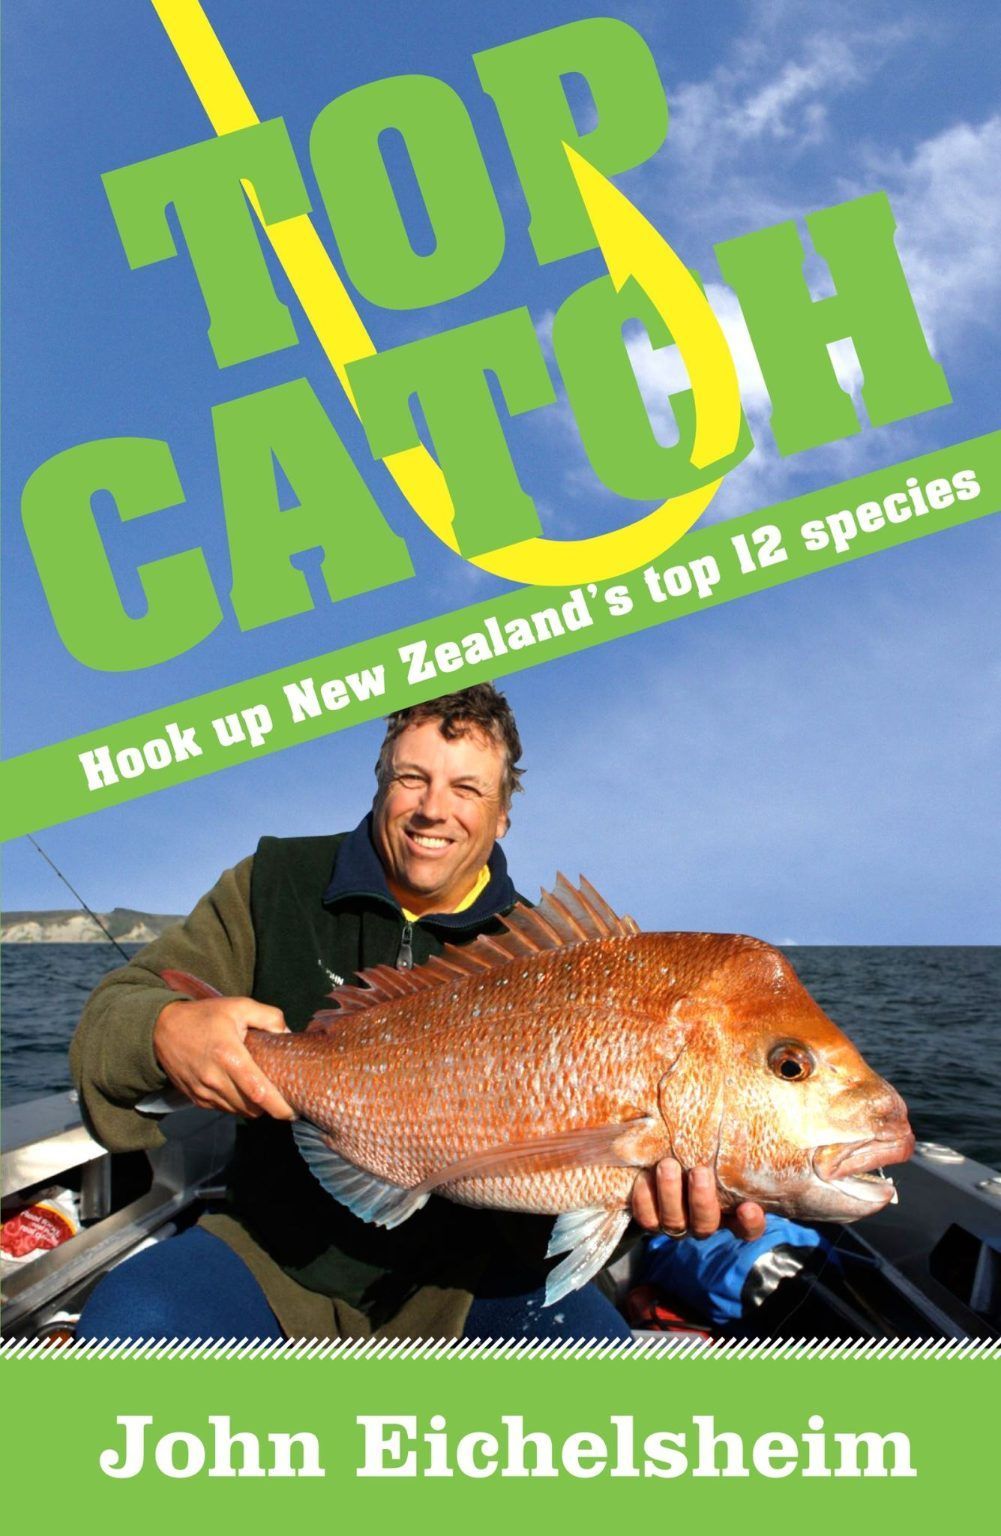 TOP CATCH: Hookup New Zealand's top 12 species